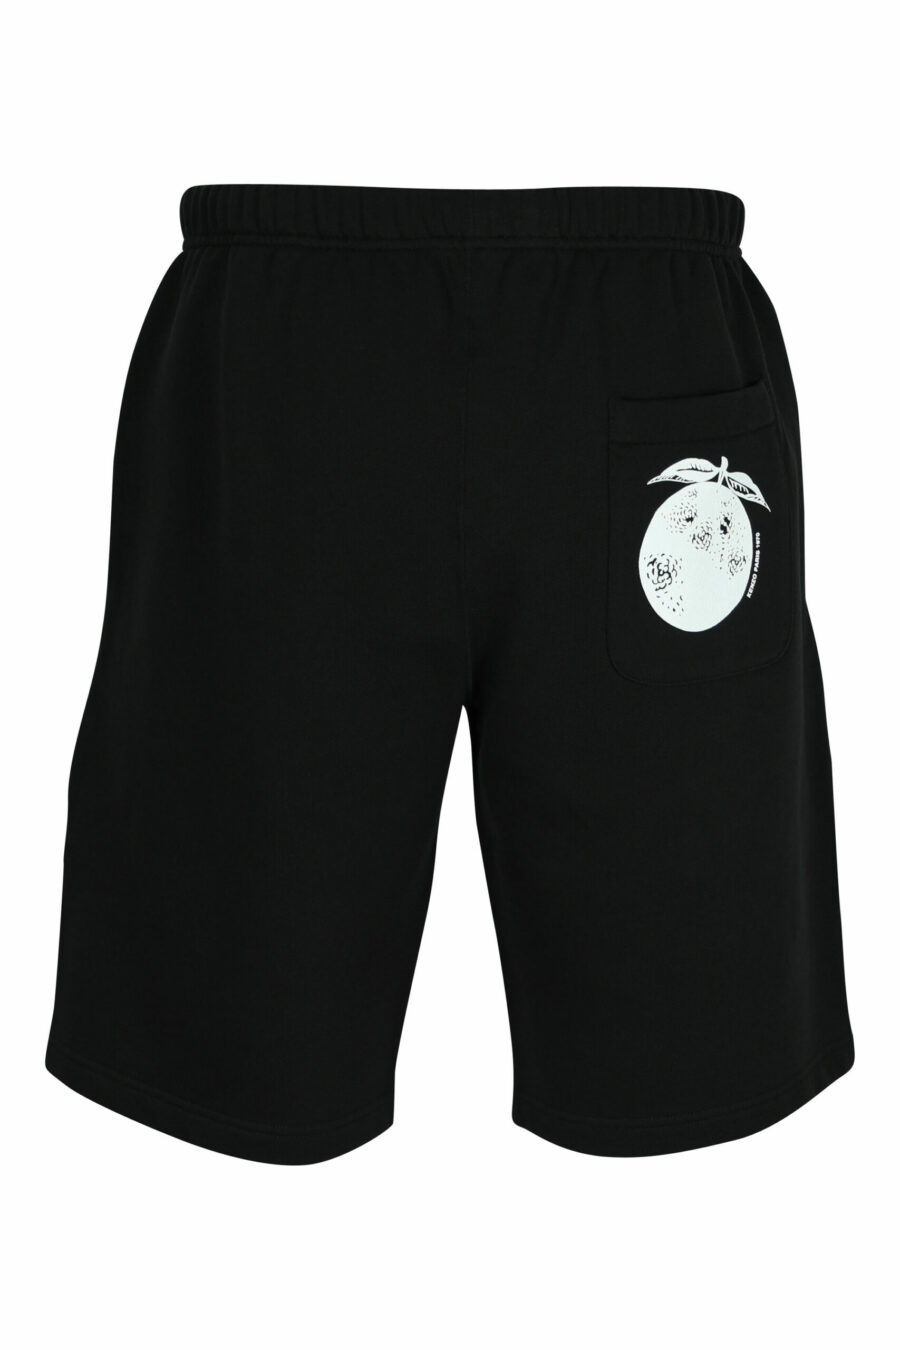 Pantalón de chándal negro corto con minilogo "kenzo orange" - 3612230620872 1 scaled